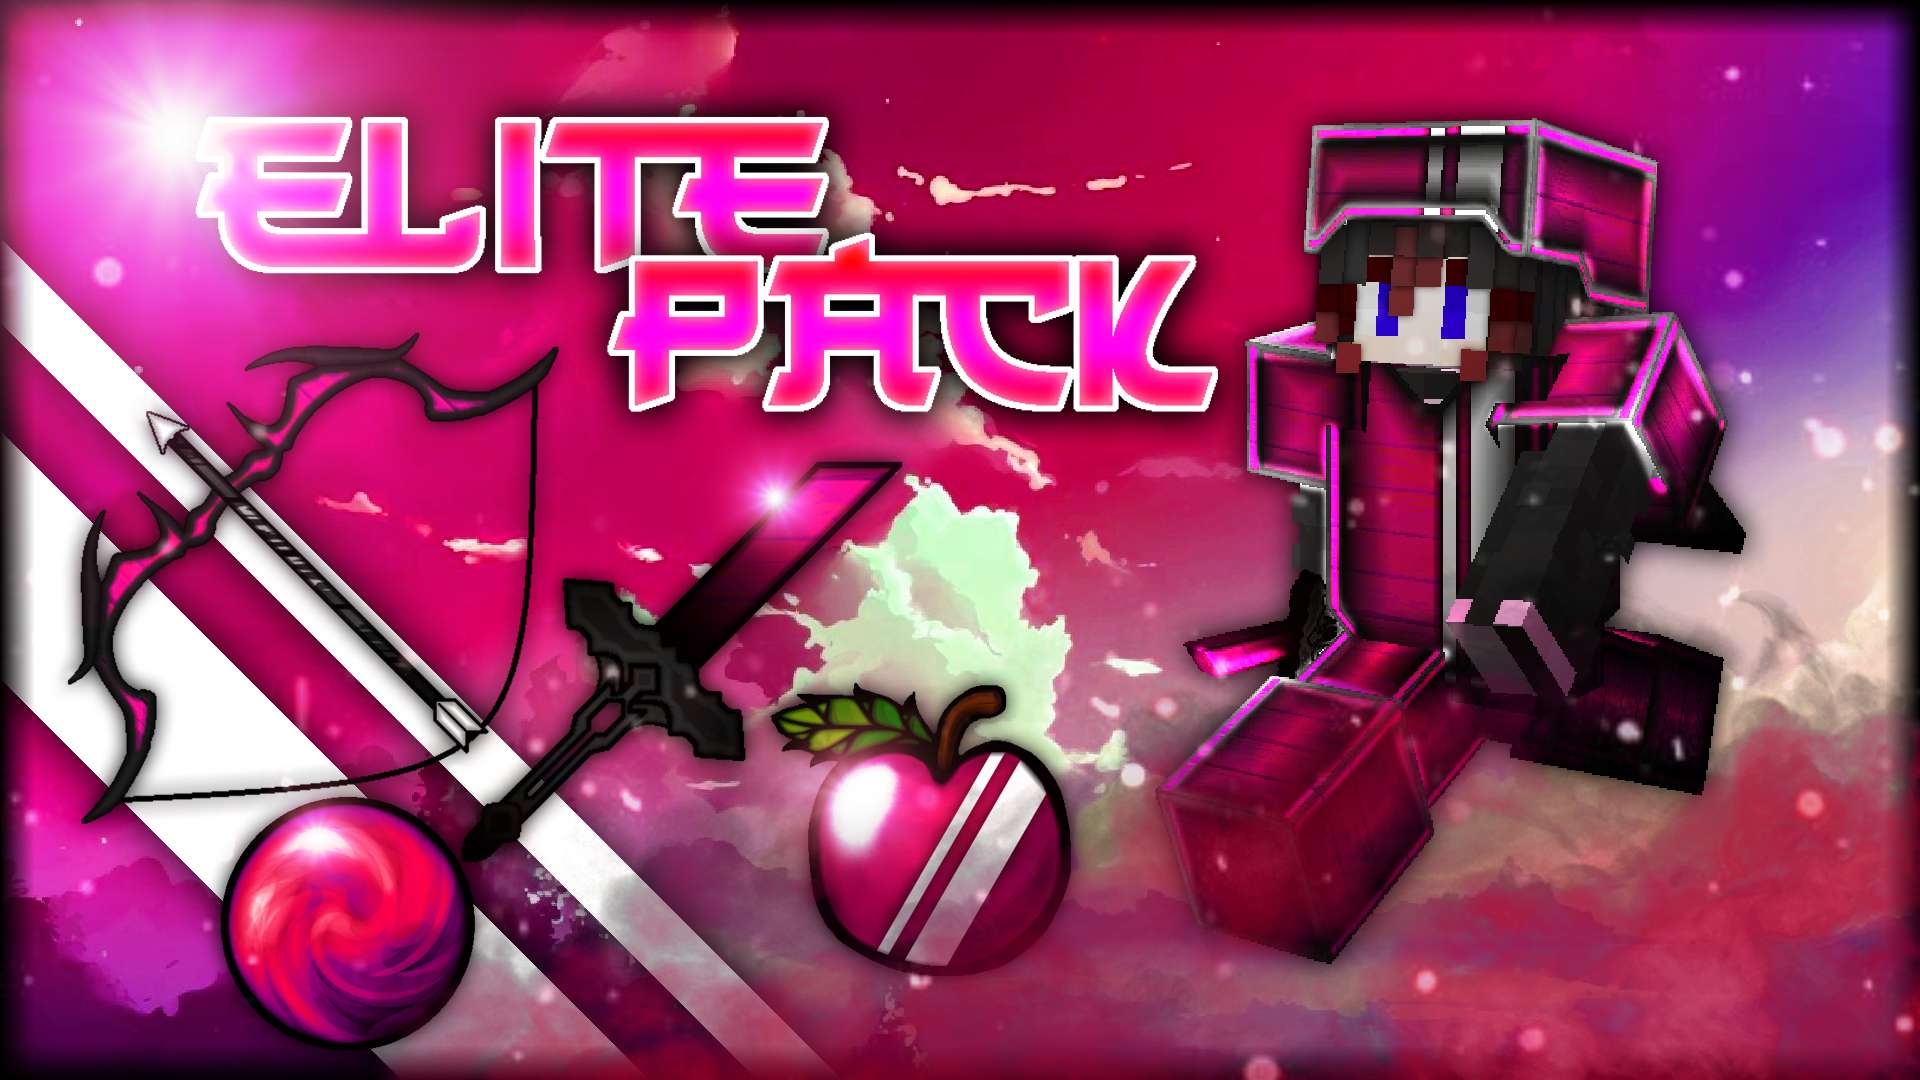 🔥 Elite Pack - Pink 512 by Moniia on PvPRP